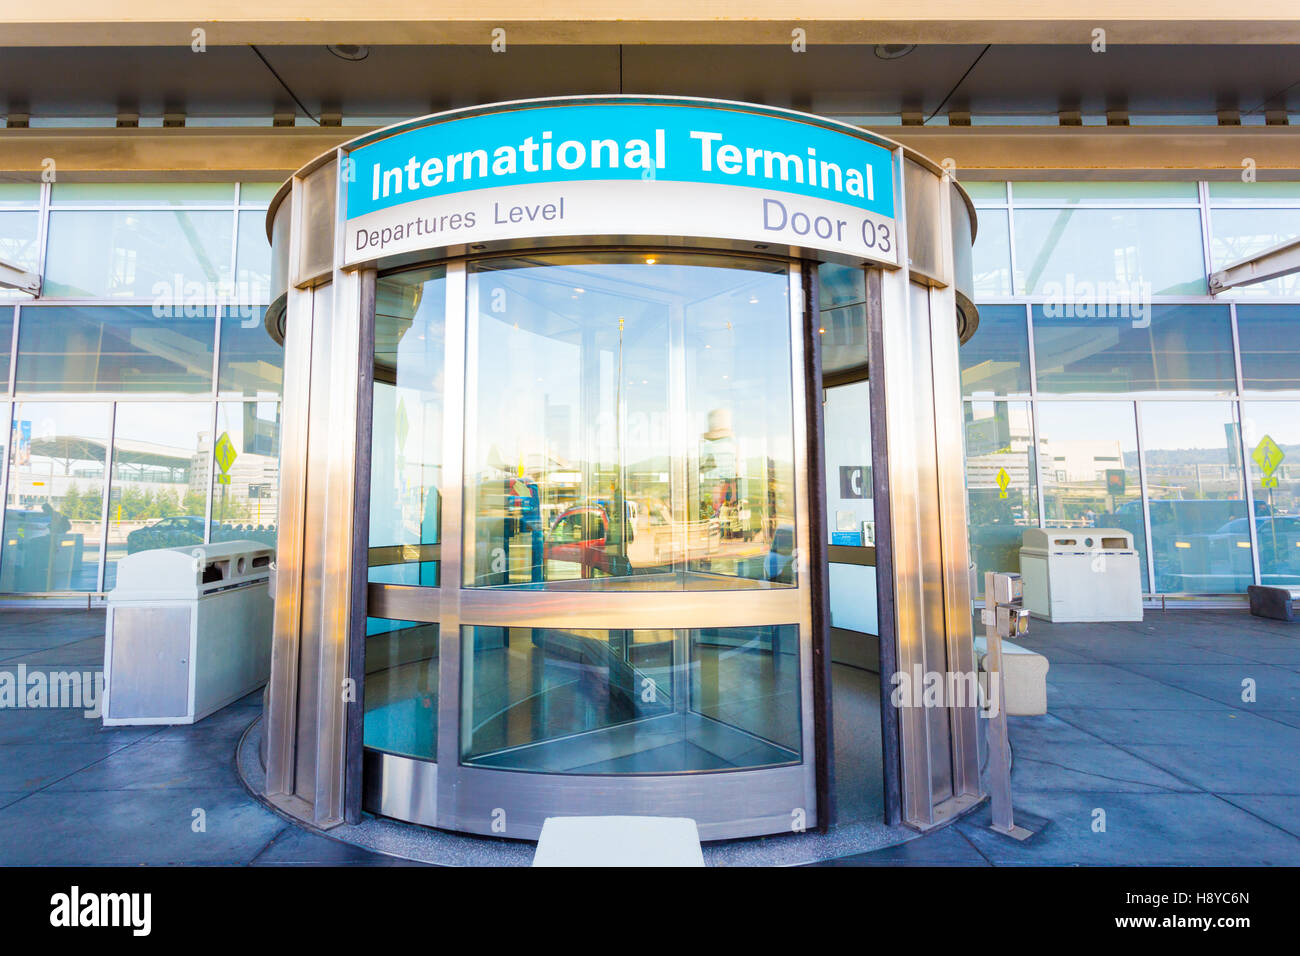 Puerta giratoria delantera proporciona una entrada a la terminal del aeropuerto internacional situado en el nivel de salidas. Horizontal Foto de stock